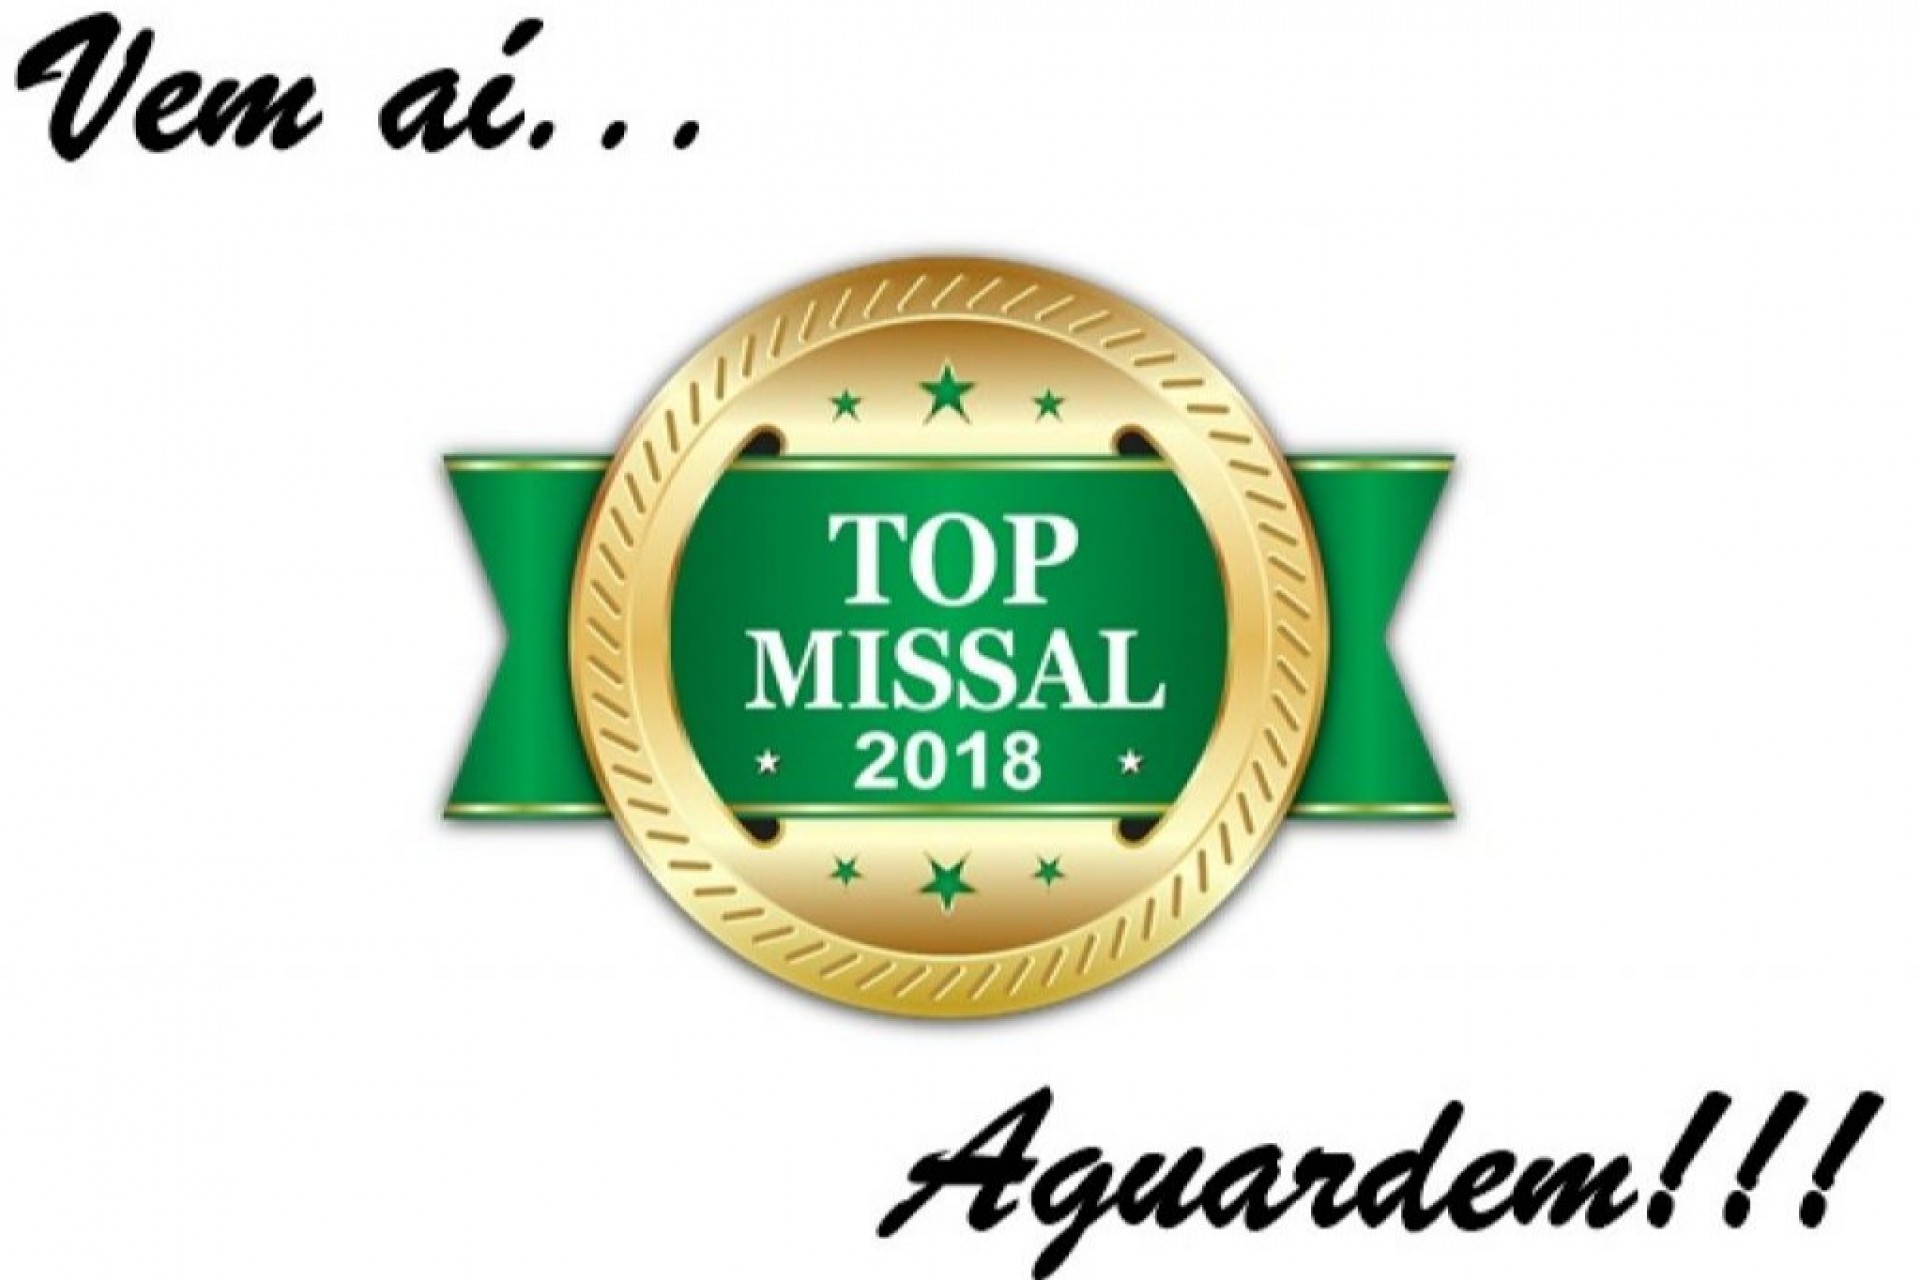 Vem aí o Top Missal 2018